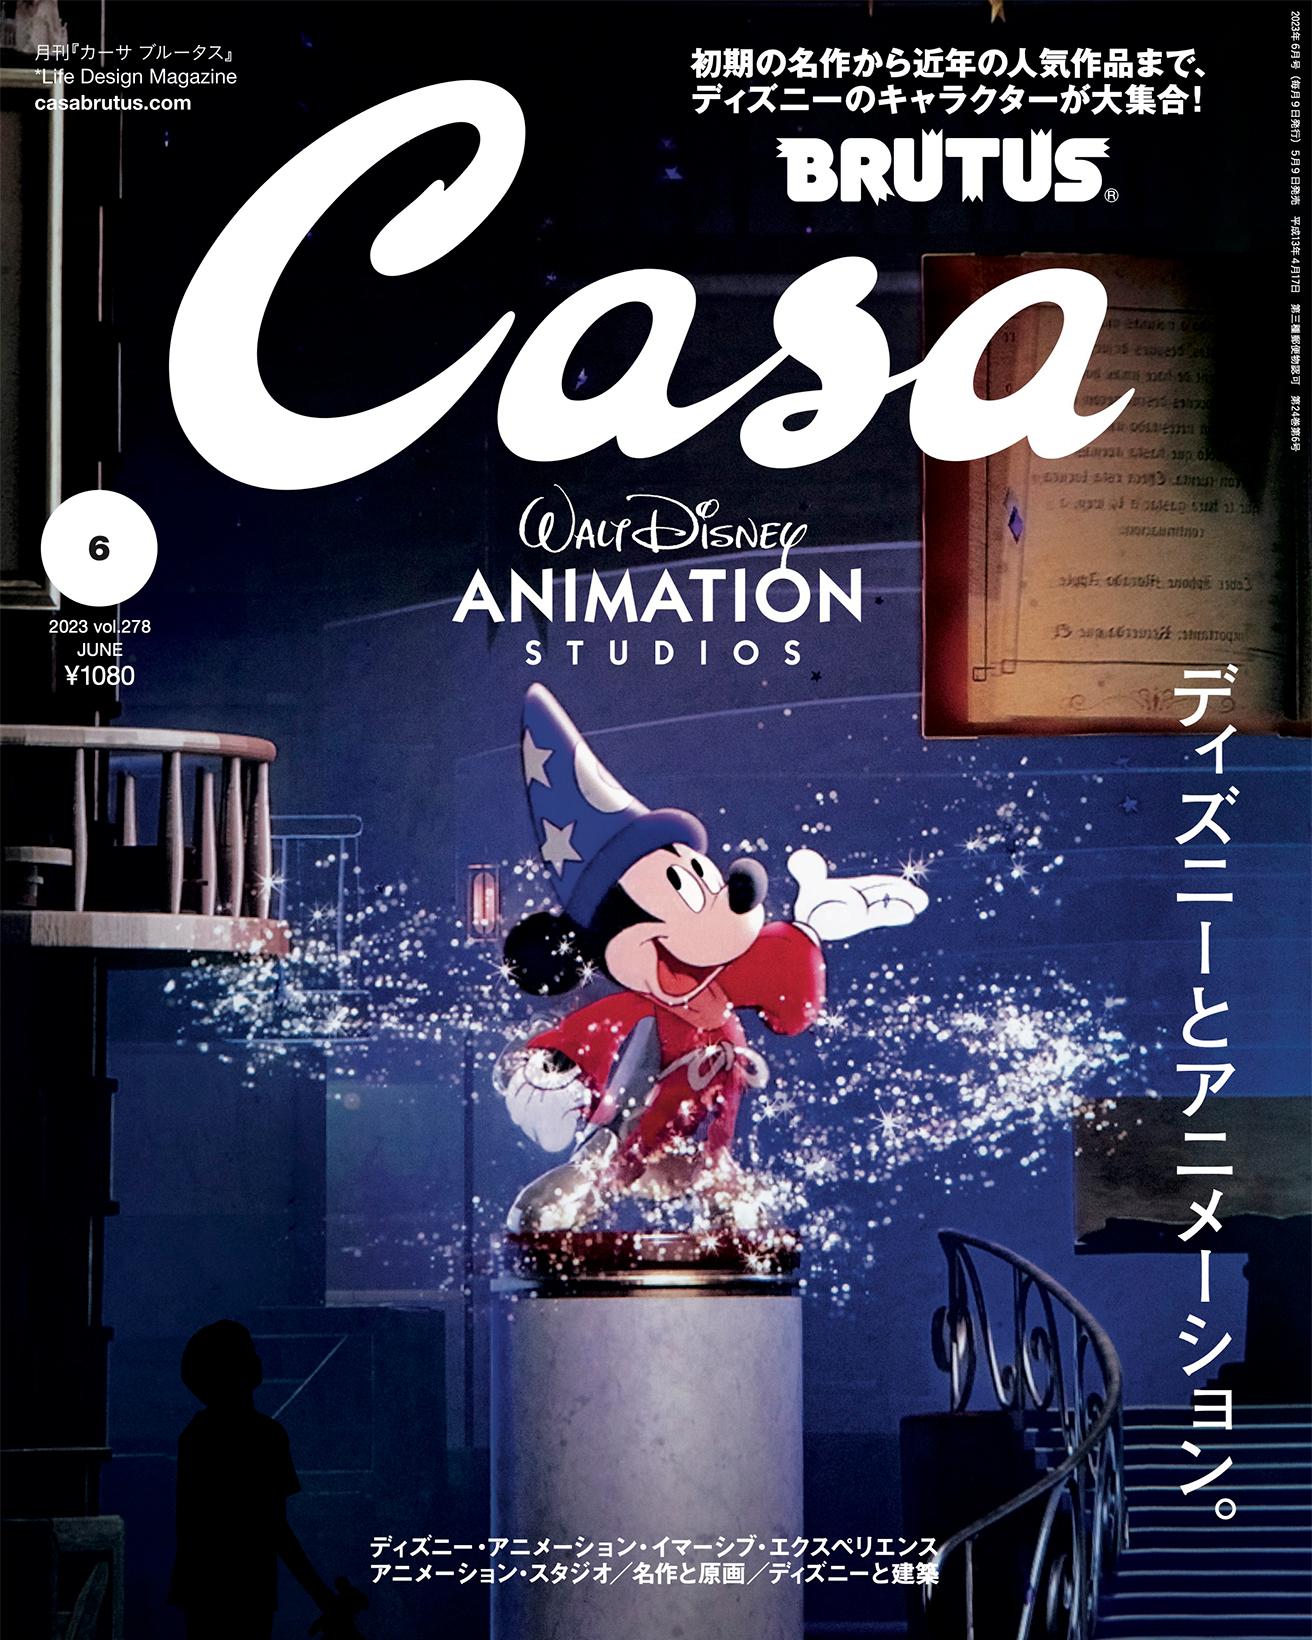 『ディズニー・アニメーション・イマーシブ・エクスペリエンス』の冒頭シーンに現れる『ファンタジア』の魔法使いの弟子のミッキーマウス。